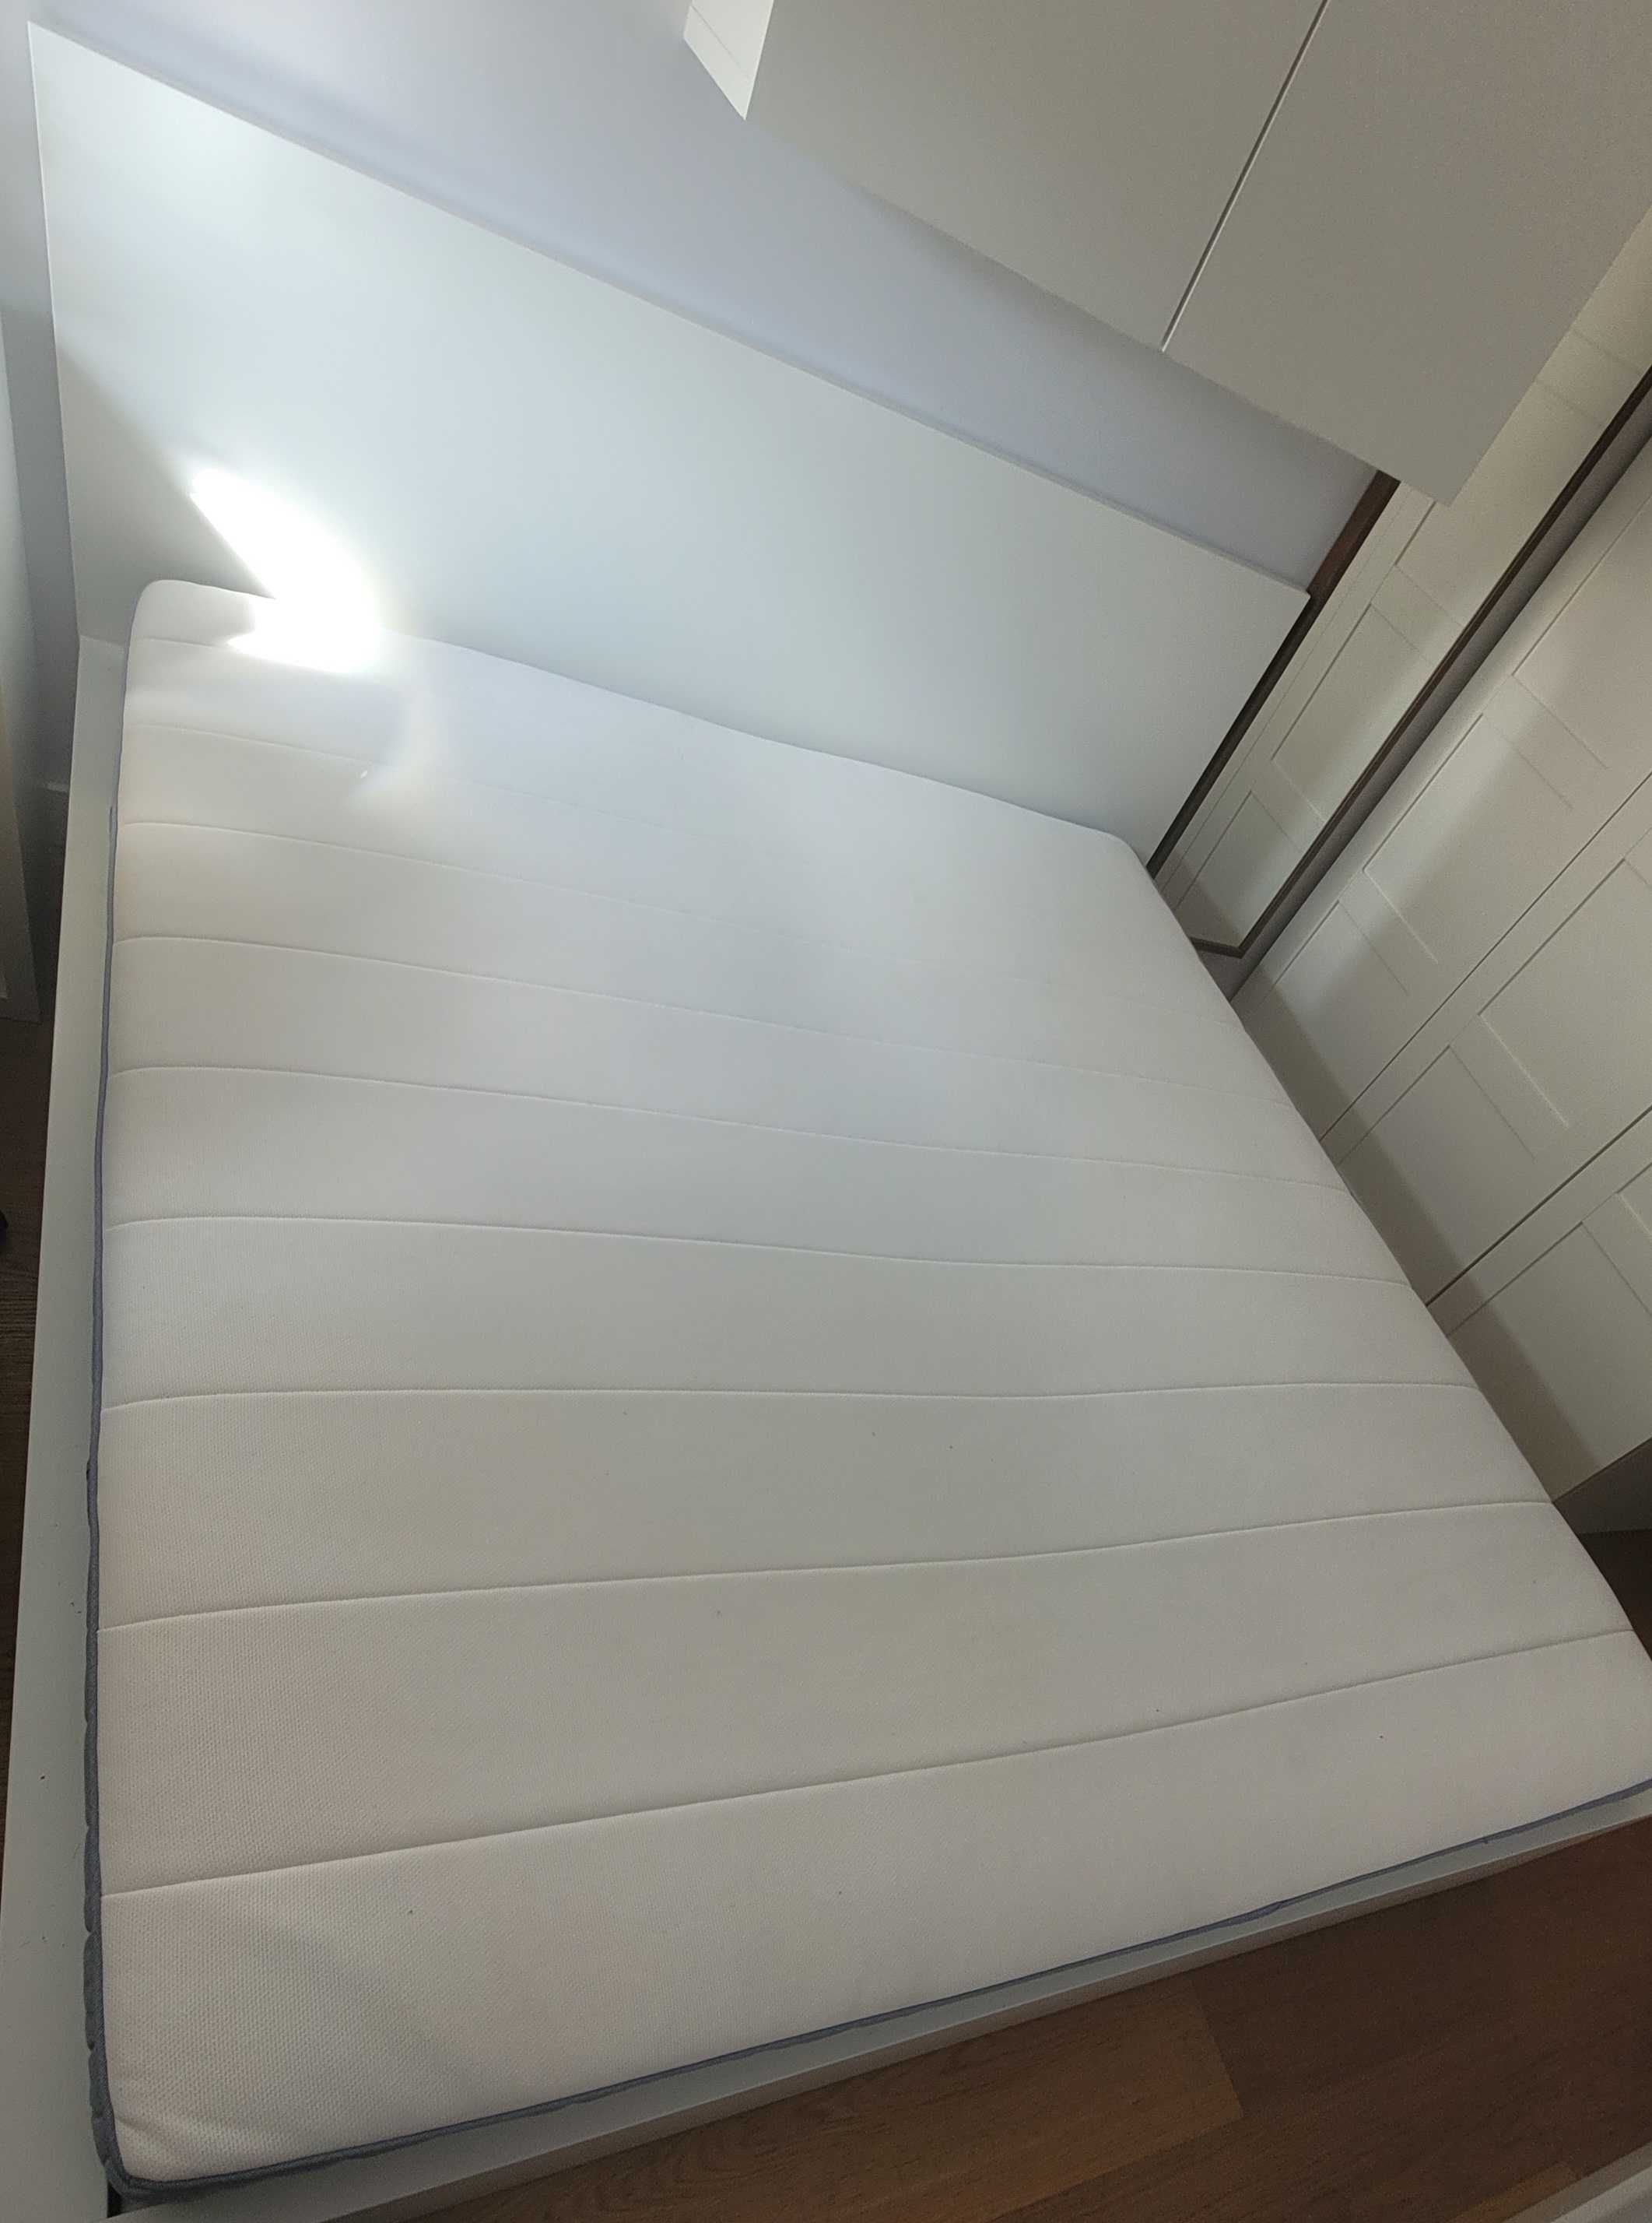 Łóżko Malm Ikea 180x200 wraz z materacem Valavag